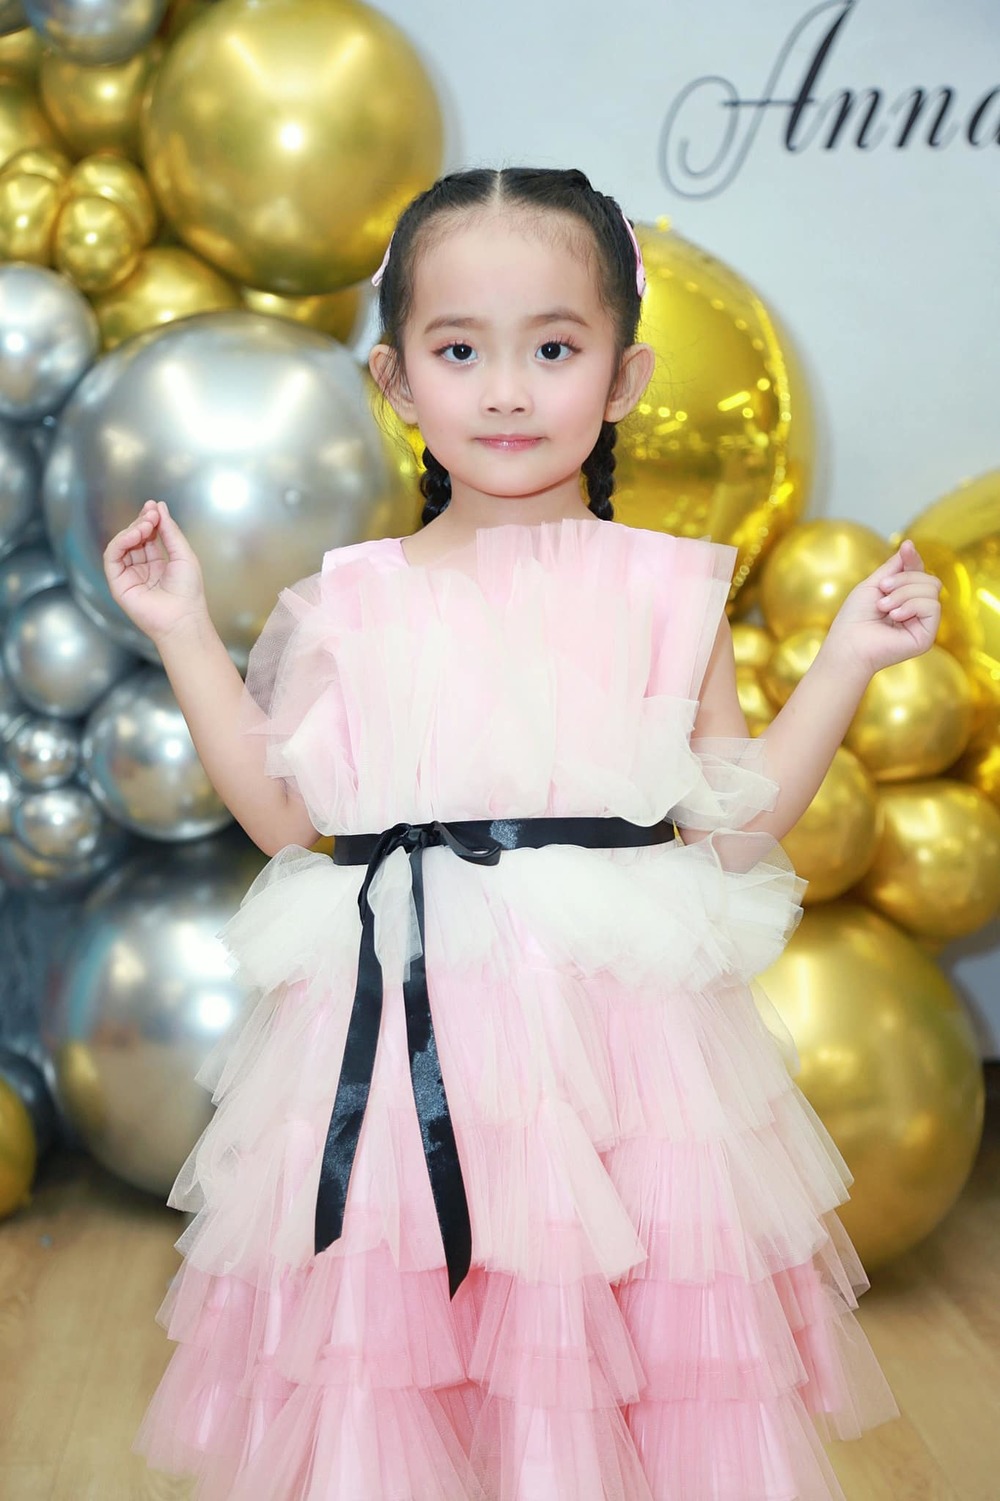 Con gái Khánh Thi mới 4 tuổi đã sành điệu không kém người lớn-6